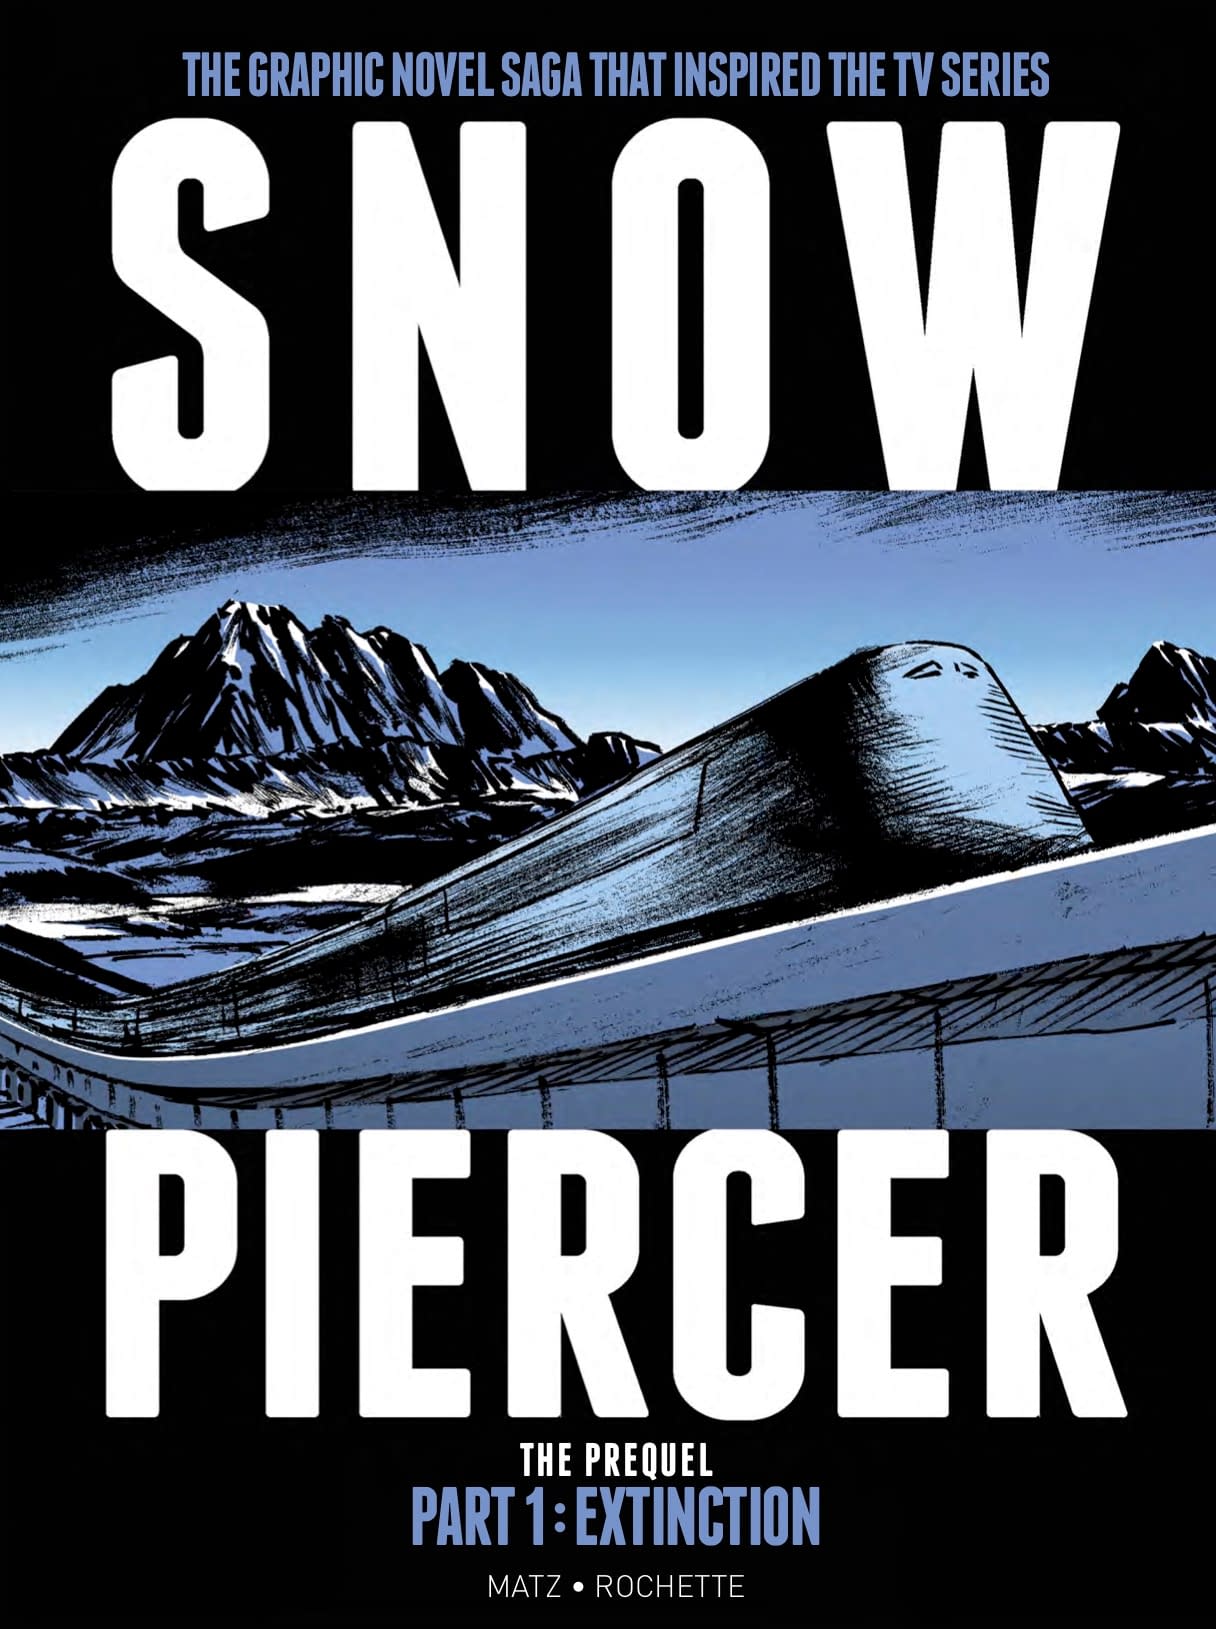 Snowpiercer: Extinction